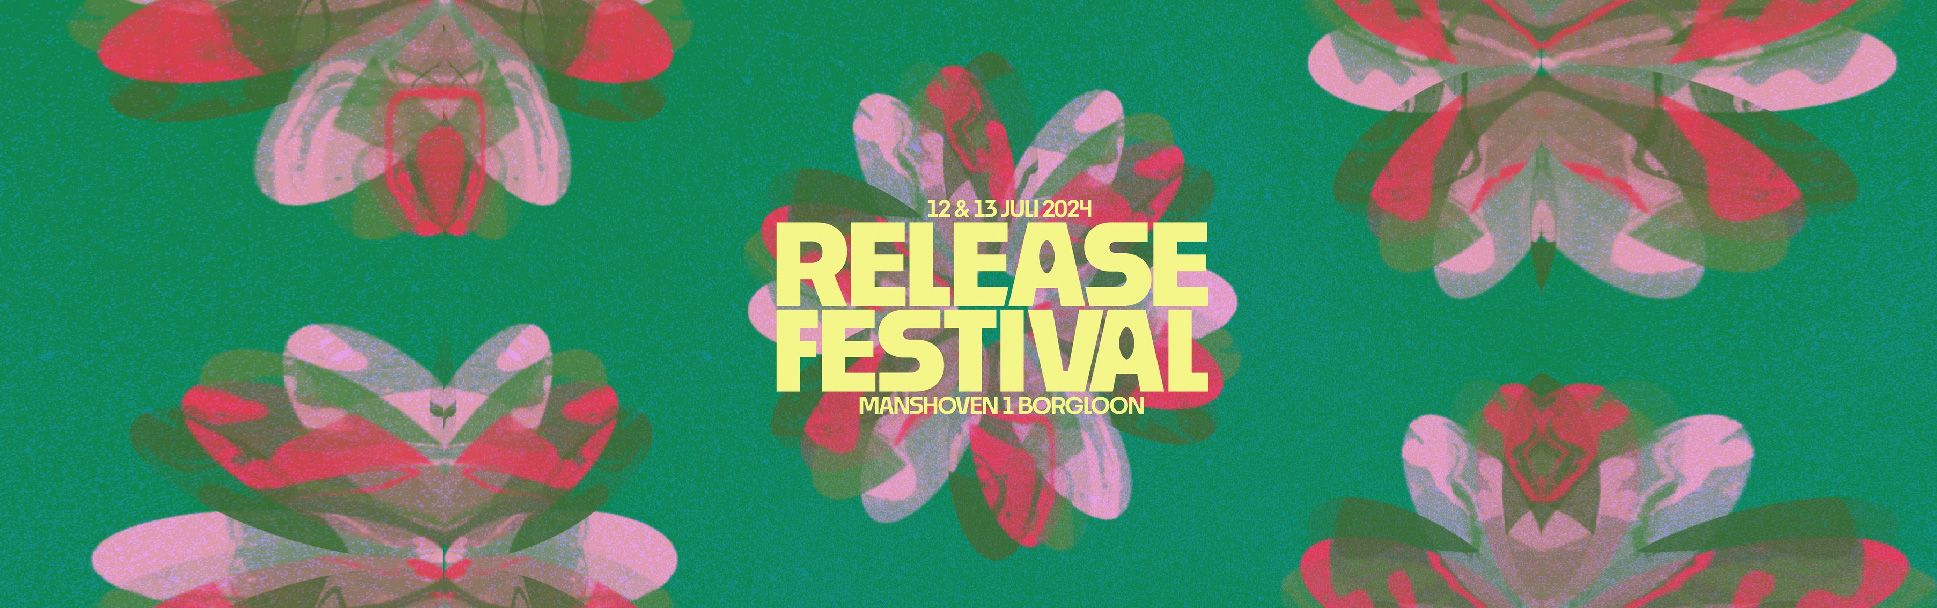 Release Festival header